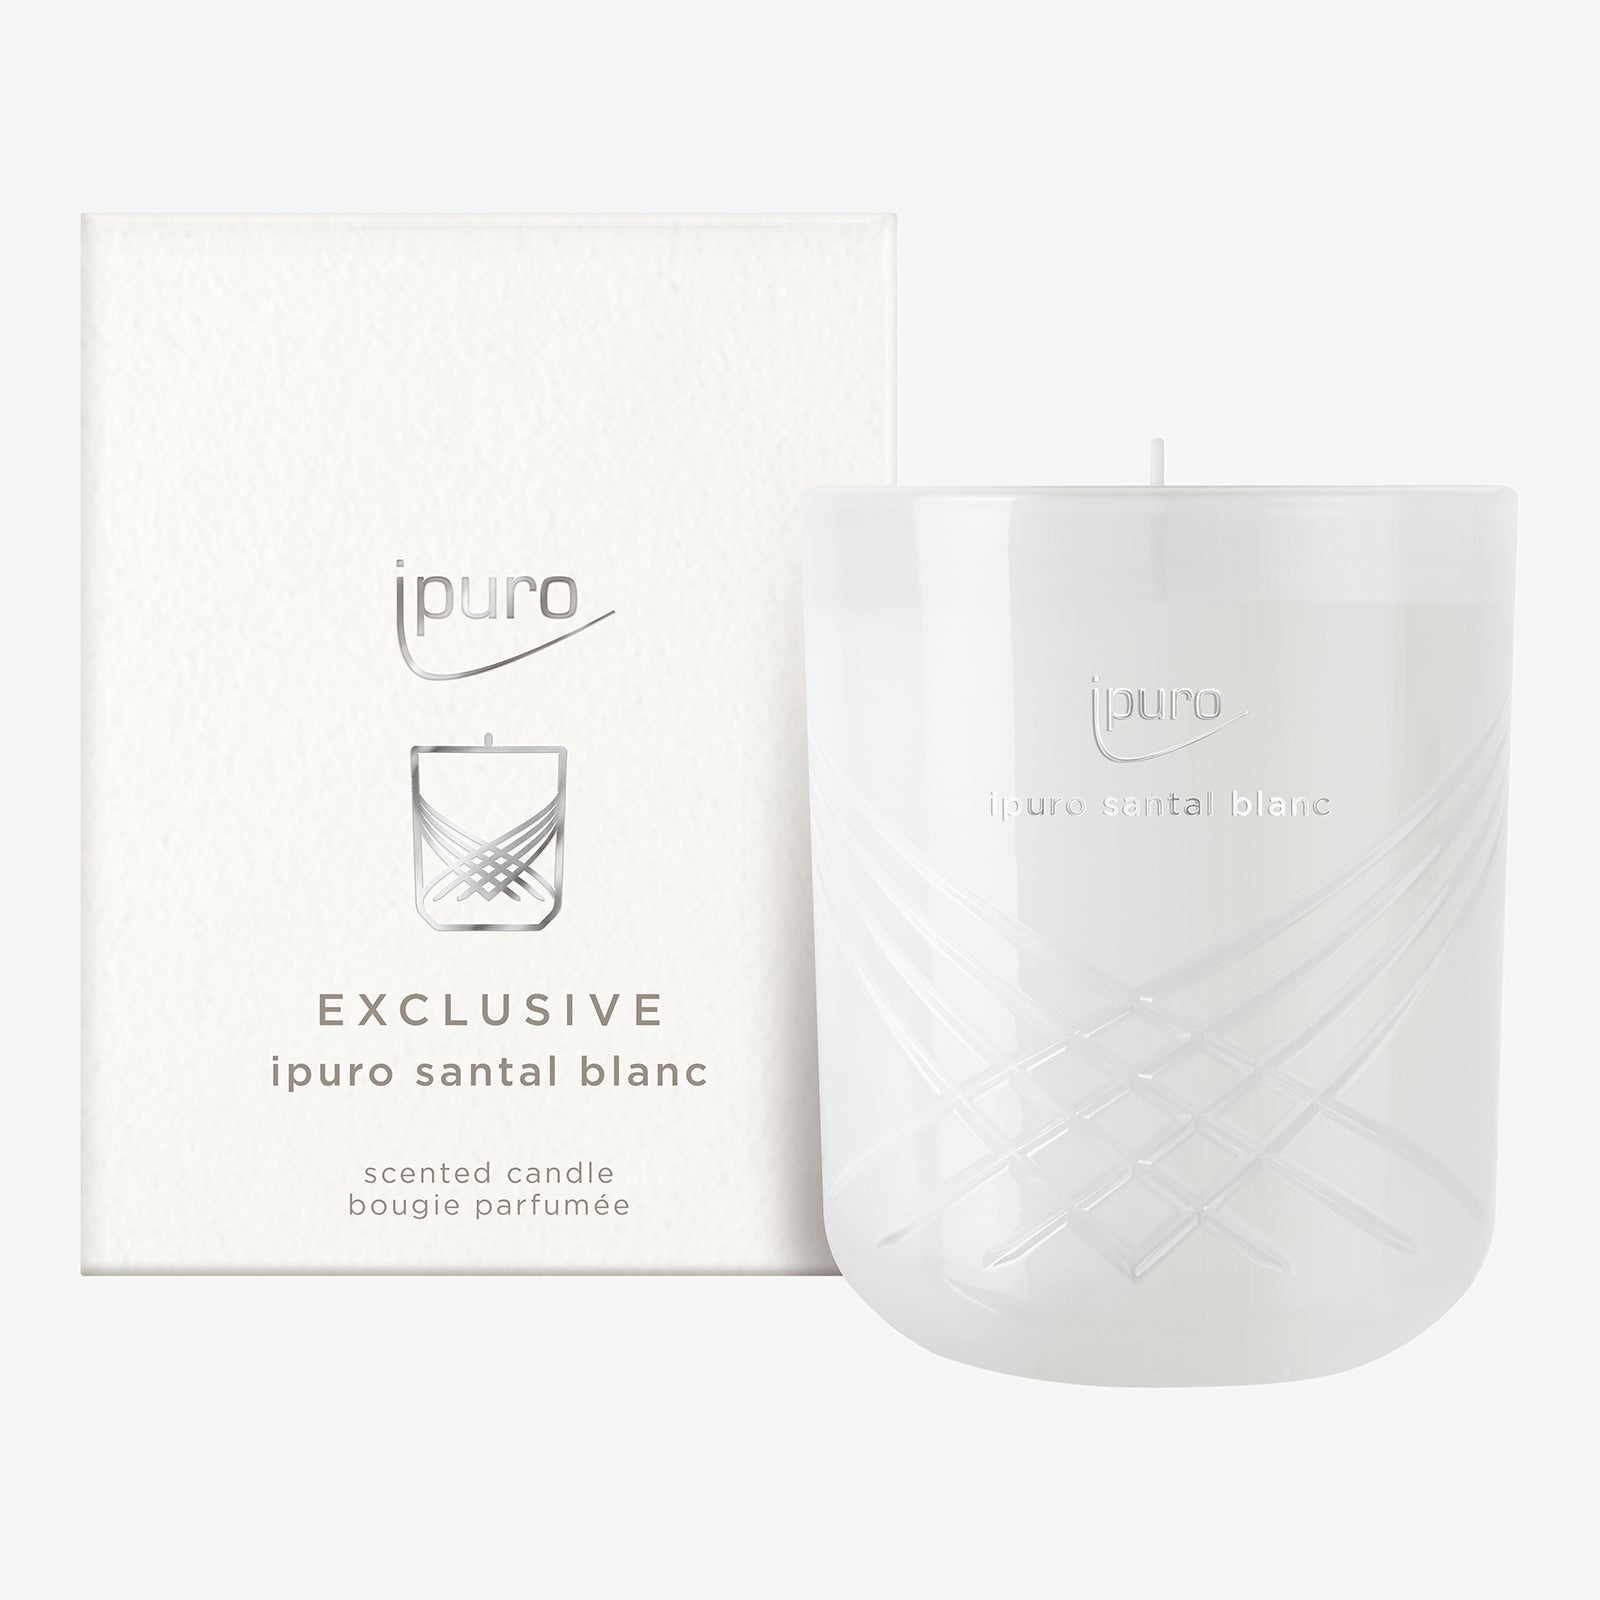 EXCLUSIVITÉ bougie parfumée ipuro santal blanc – IPURO